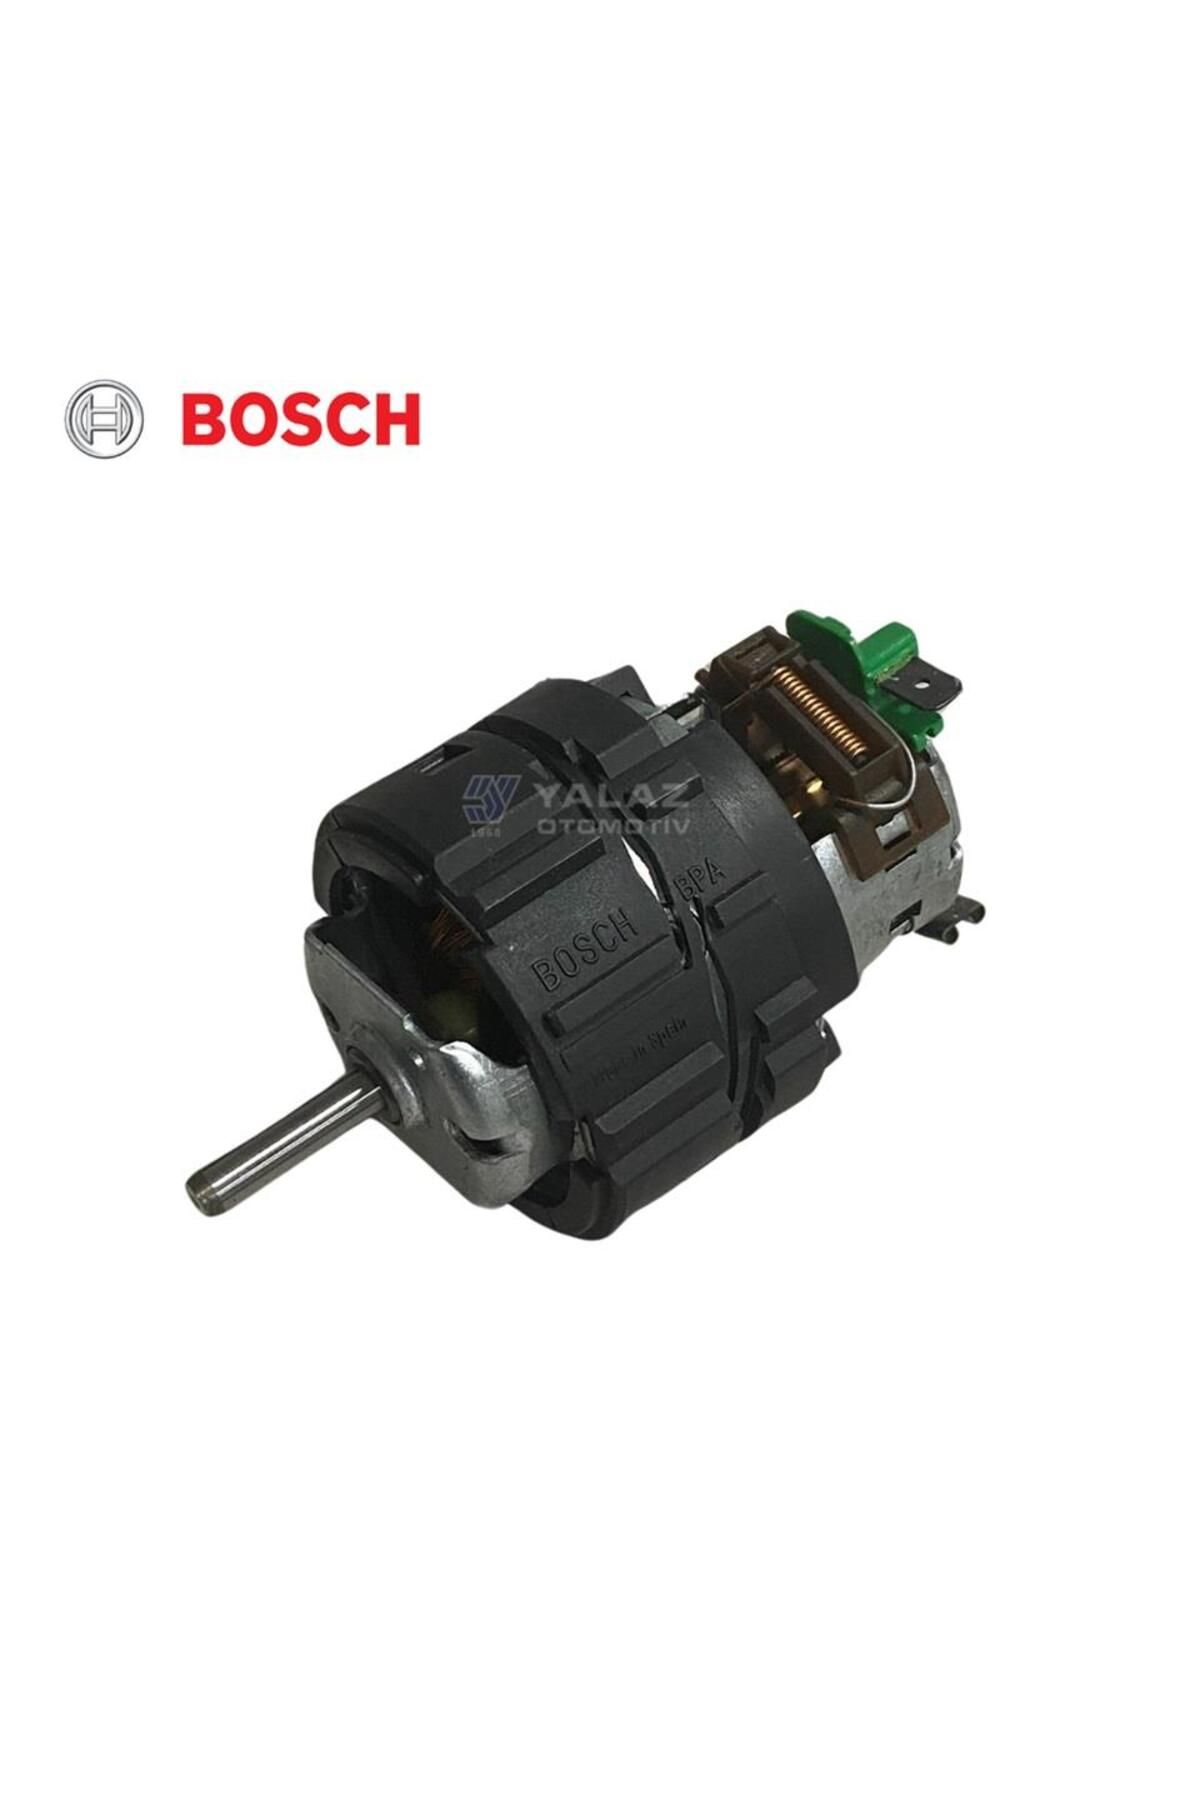 Bosch 24v Kalorifer Motoru Em (KÜÇÜK TİP) (MİL ÇAPI 6MM)